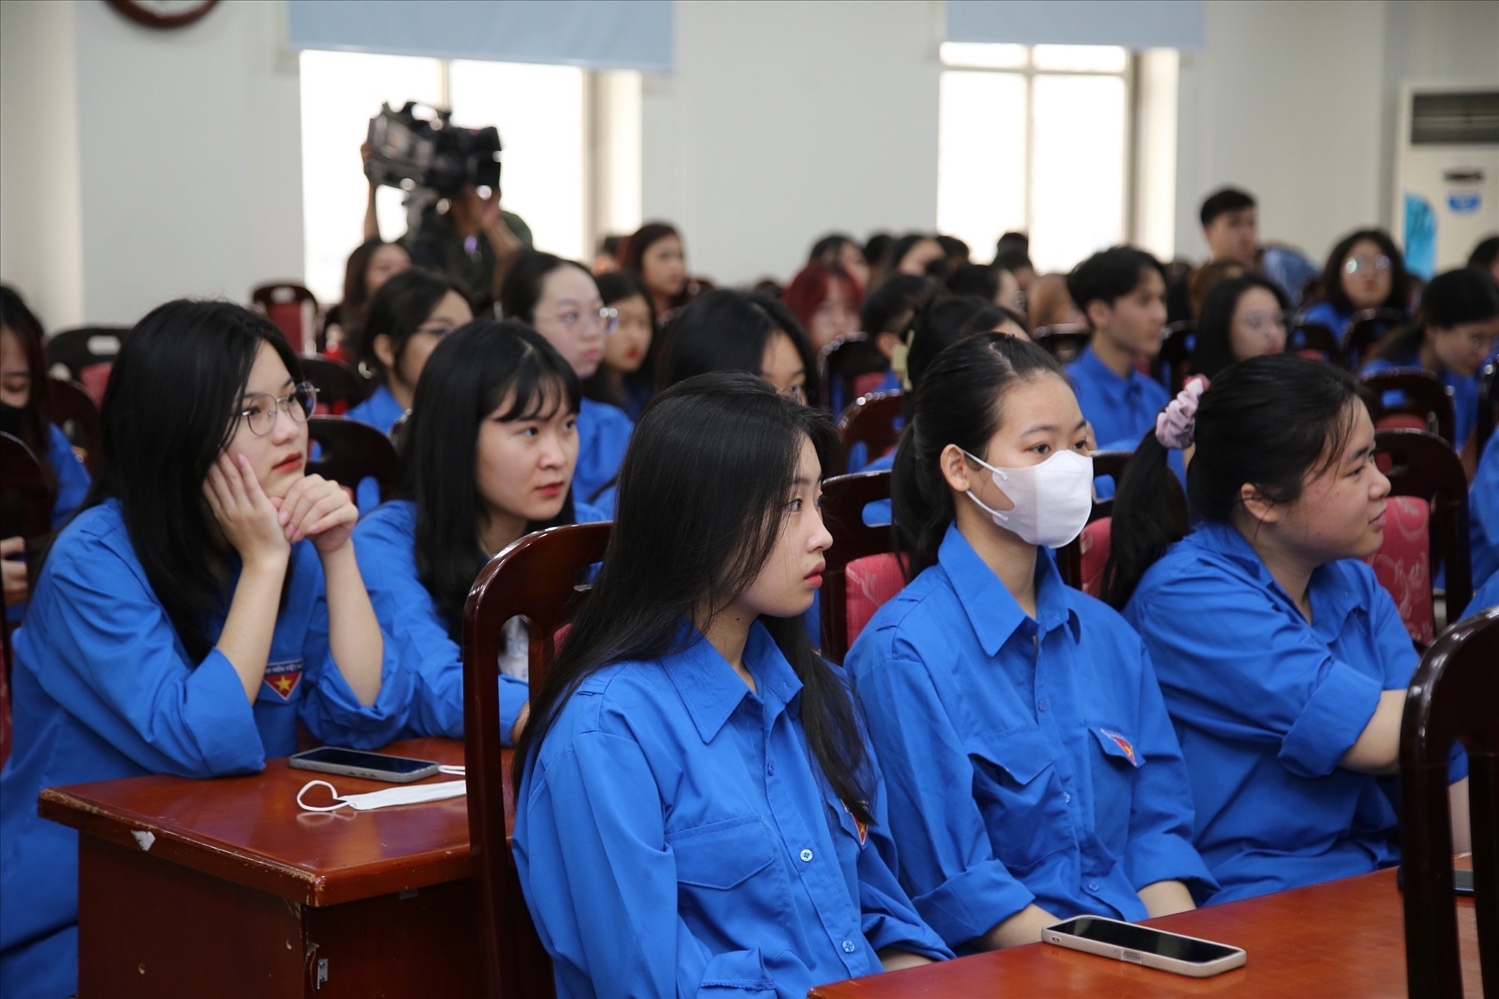 Chương trình góp phần xây dựng Hội Sinh viên Việt Nam ngày càng vững mạnh và phát triển, đồng hành với sinh viên trong thời đại số (Ảnh TL)